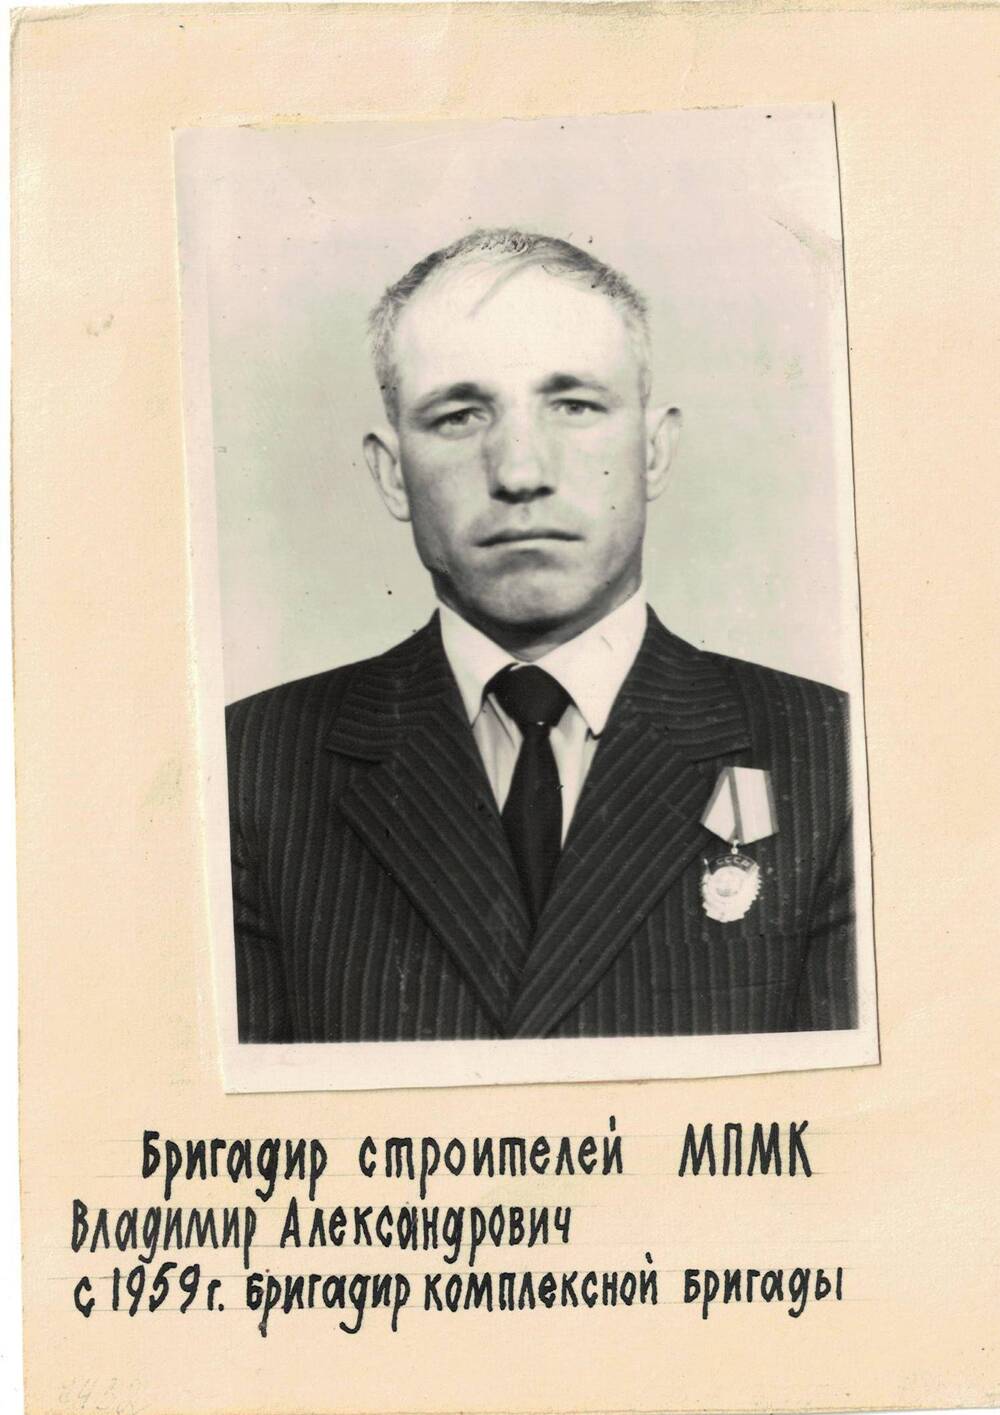 Фотография. Владимир Александрович, бригадир комплексной бригады строителей 1959 г.